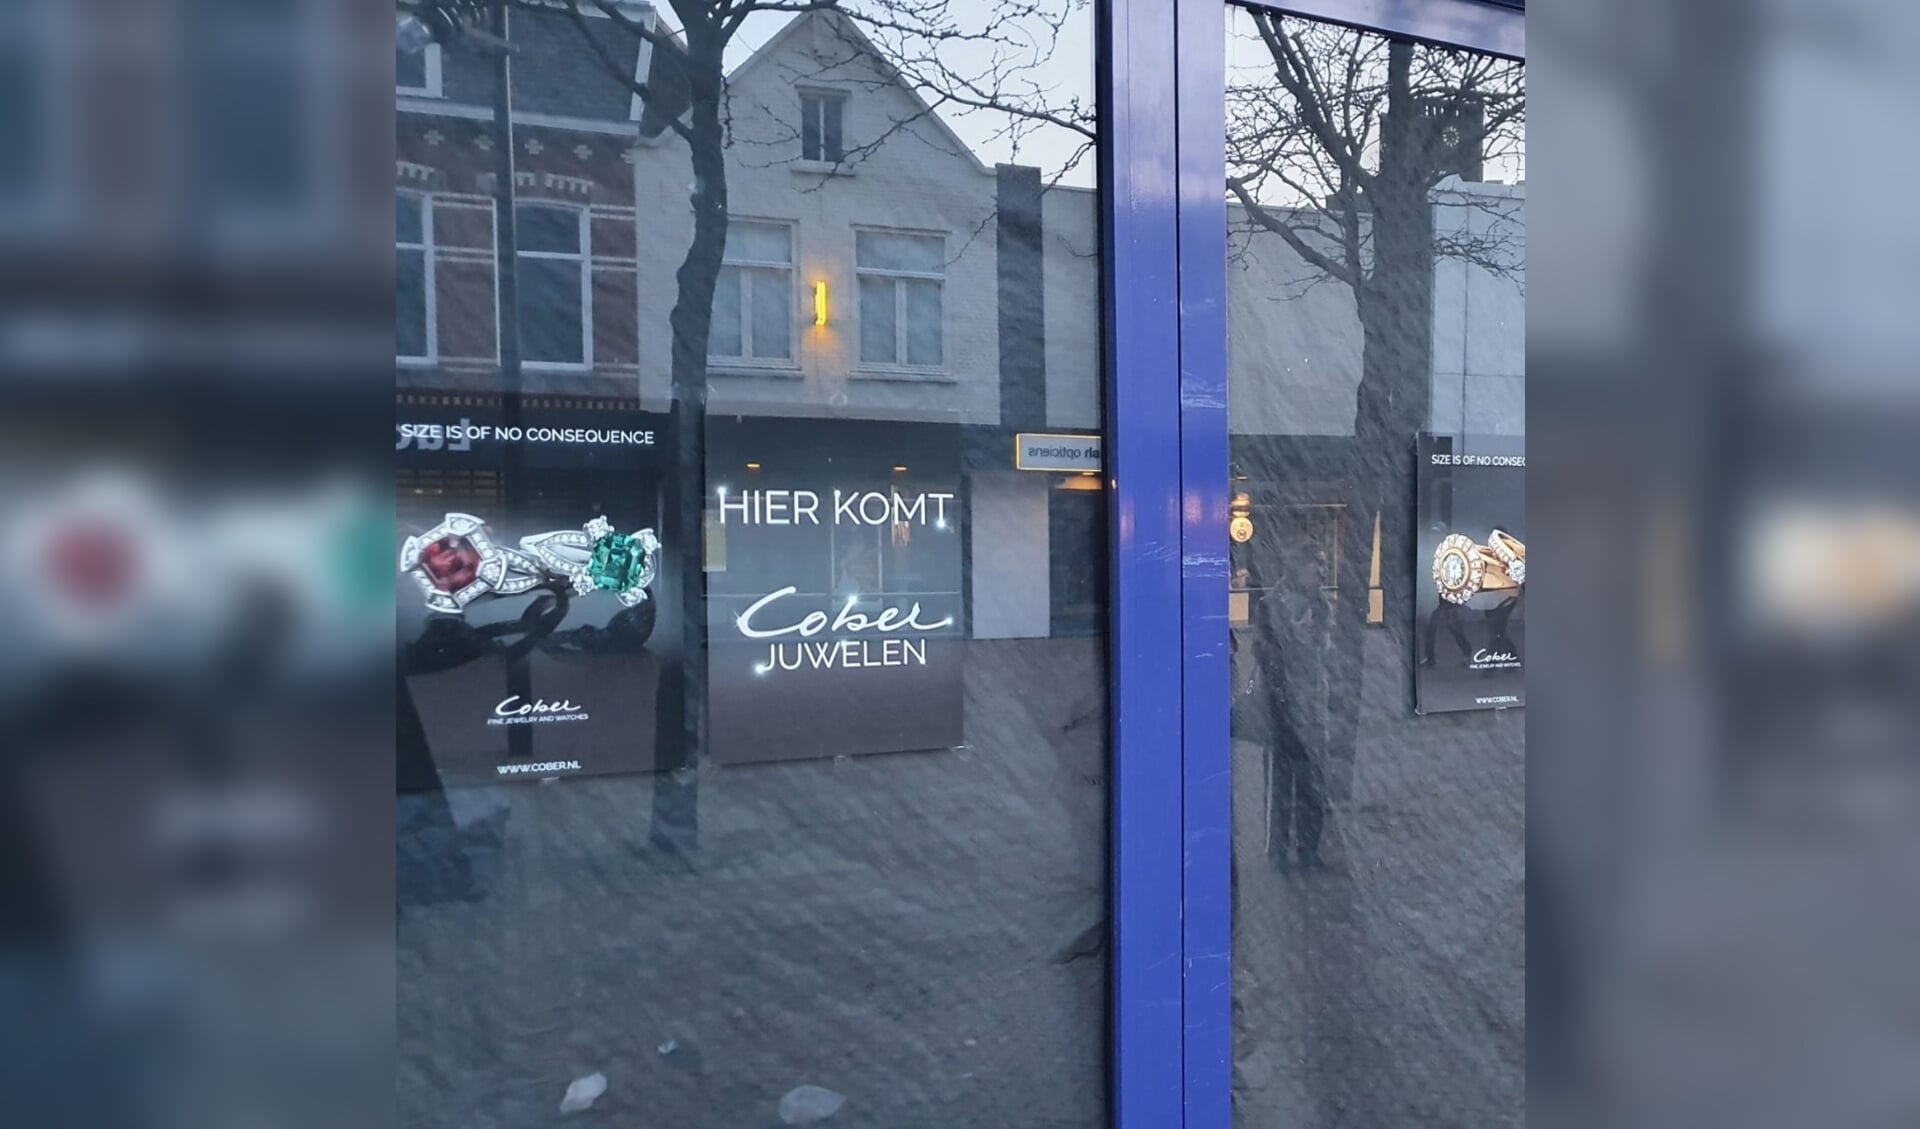 Cober Juwelen na 30 jaar Houtstraat naar nieuw pand aan Walplein.